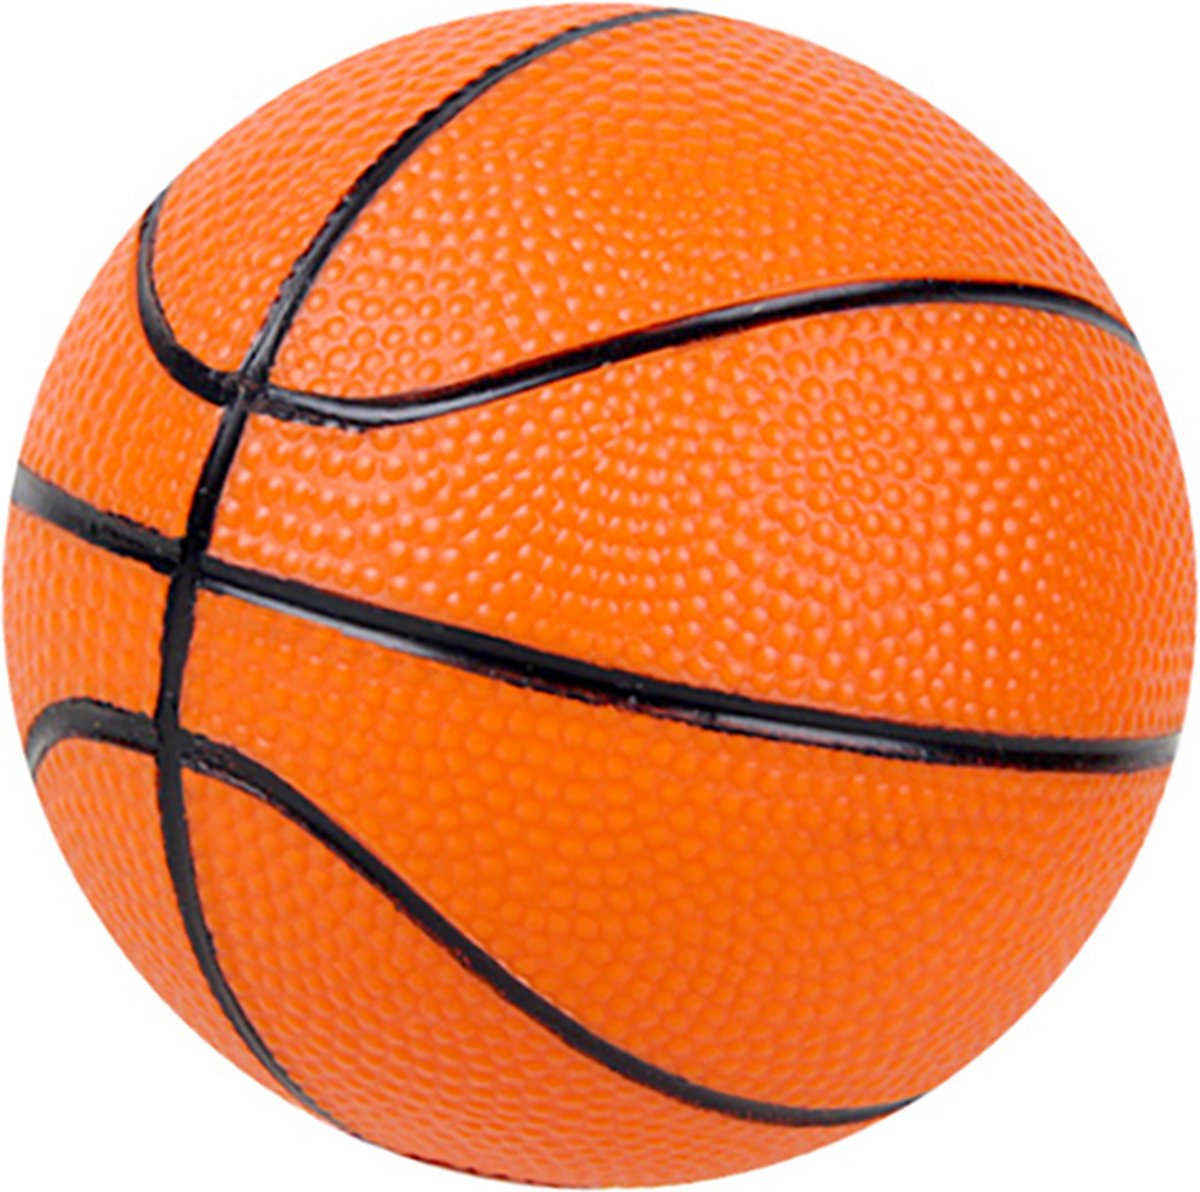 Pegasi Mini Basketbal maat 2: 12,7 cm omtrek - Kleine basketbal